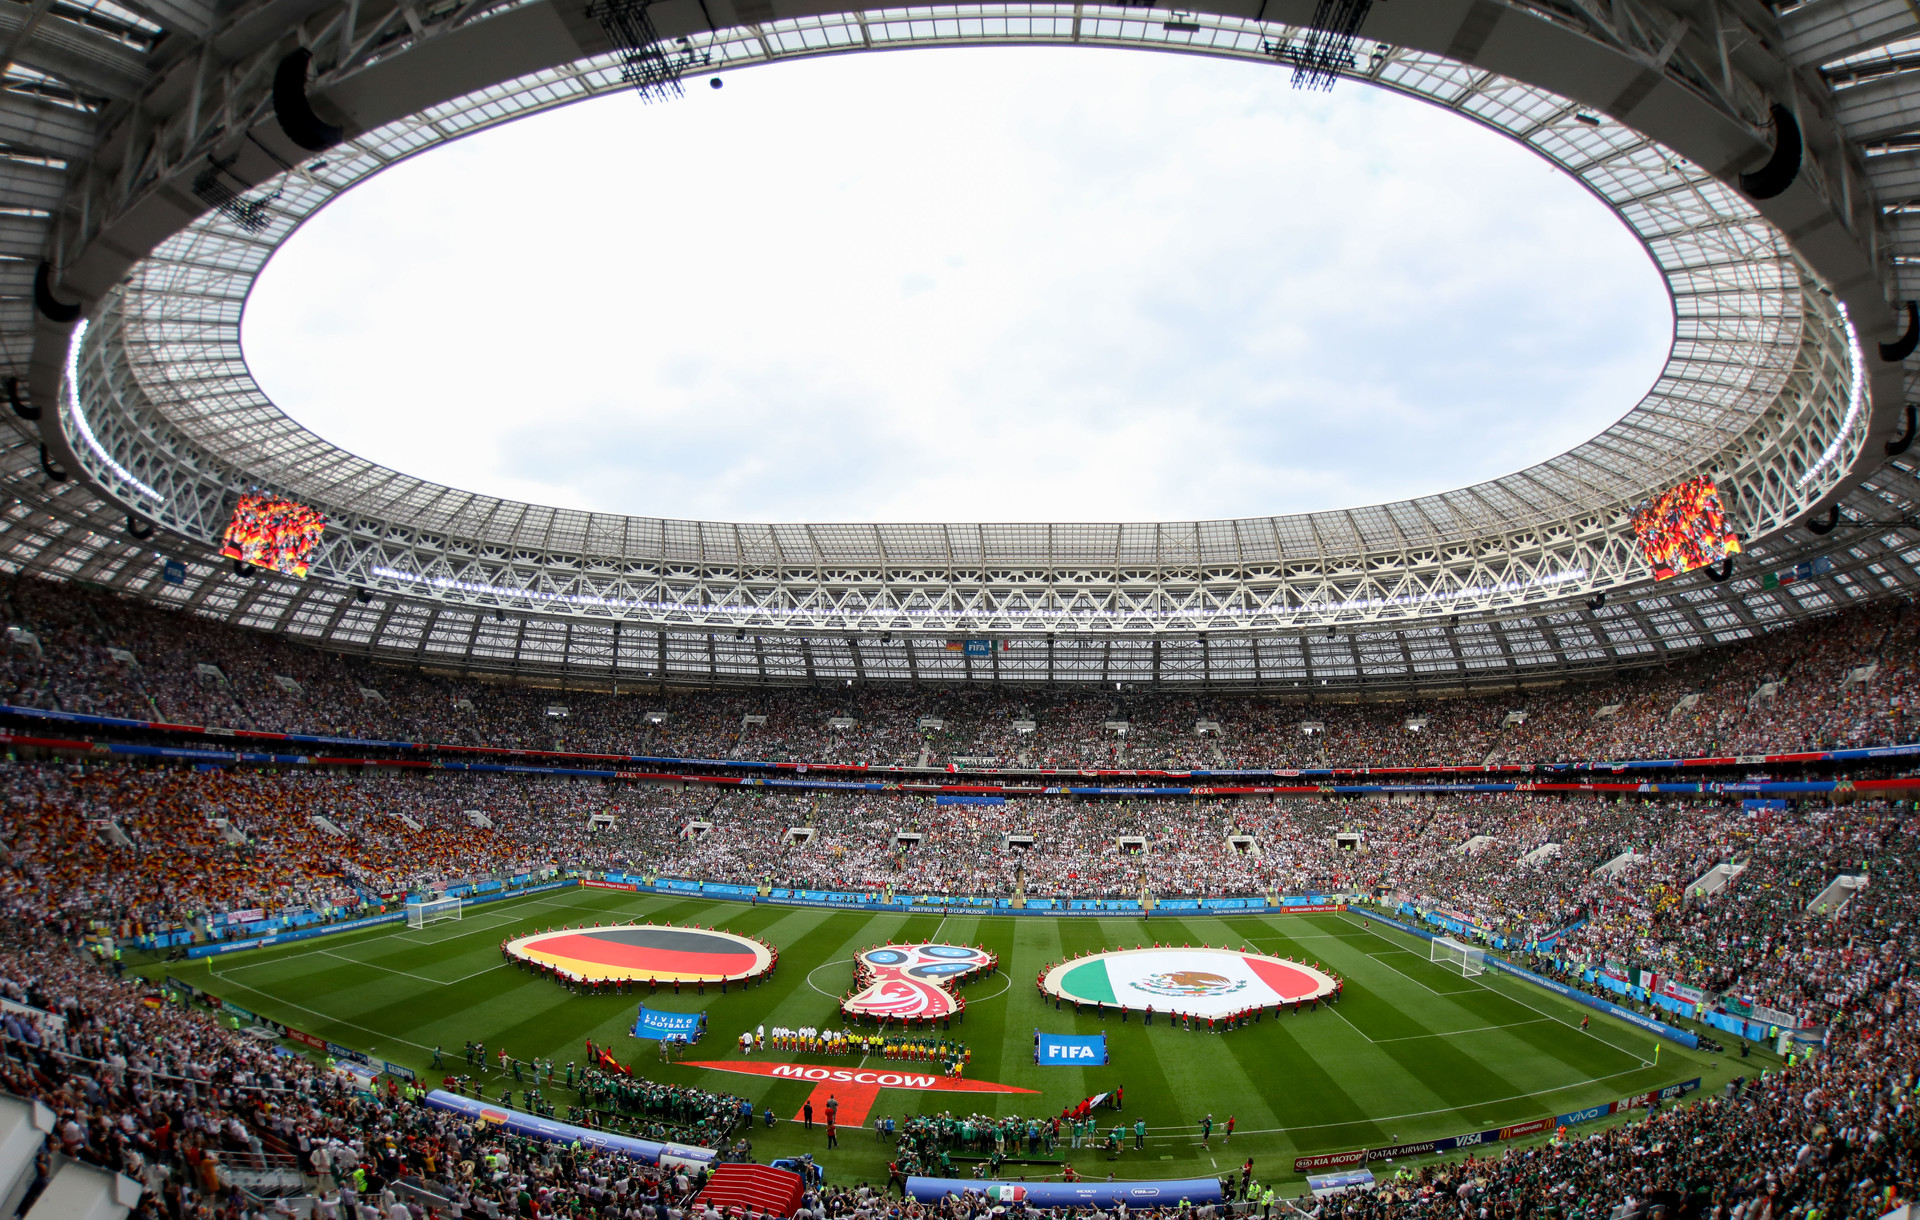 El estadio Luzhnikí antés del partido entre México y Alemania, el 17 de junio de 2018.